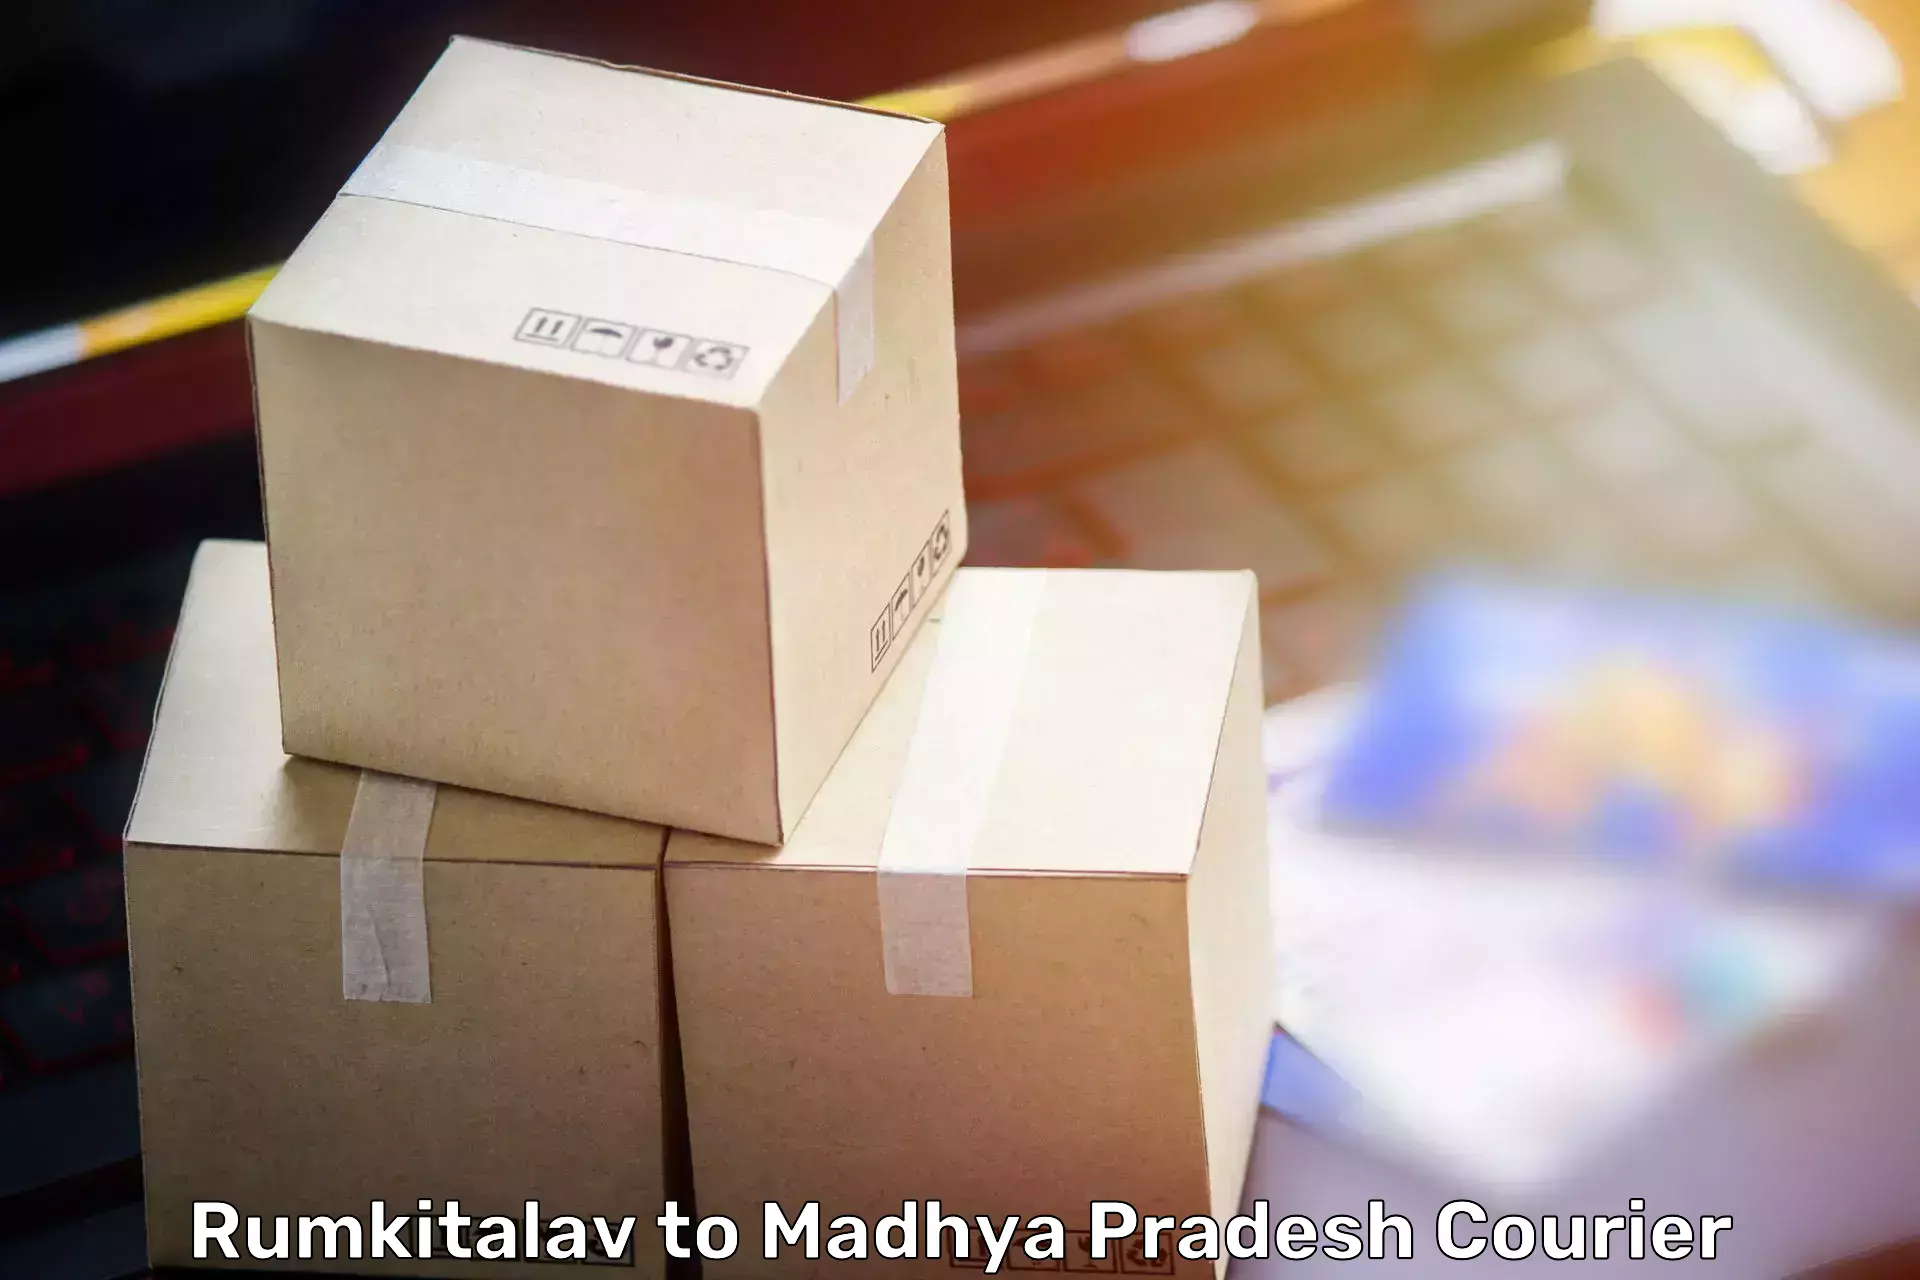 Furniture transport and storage Rumkitalav to Madhya Pradesh